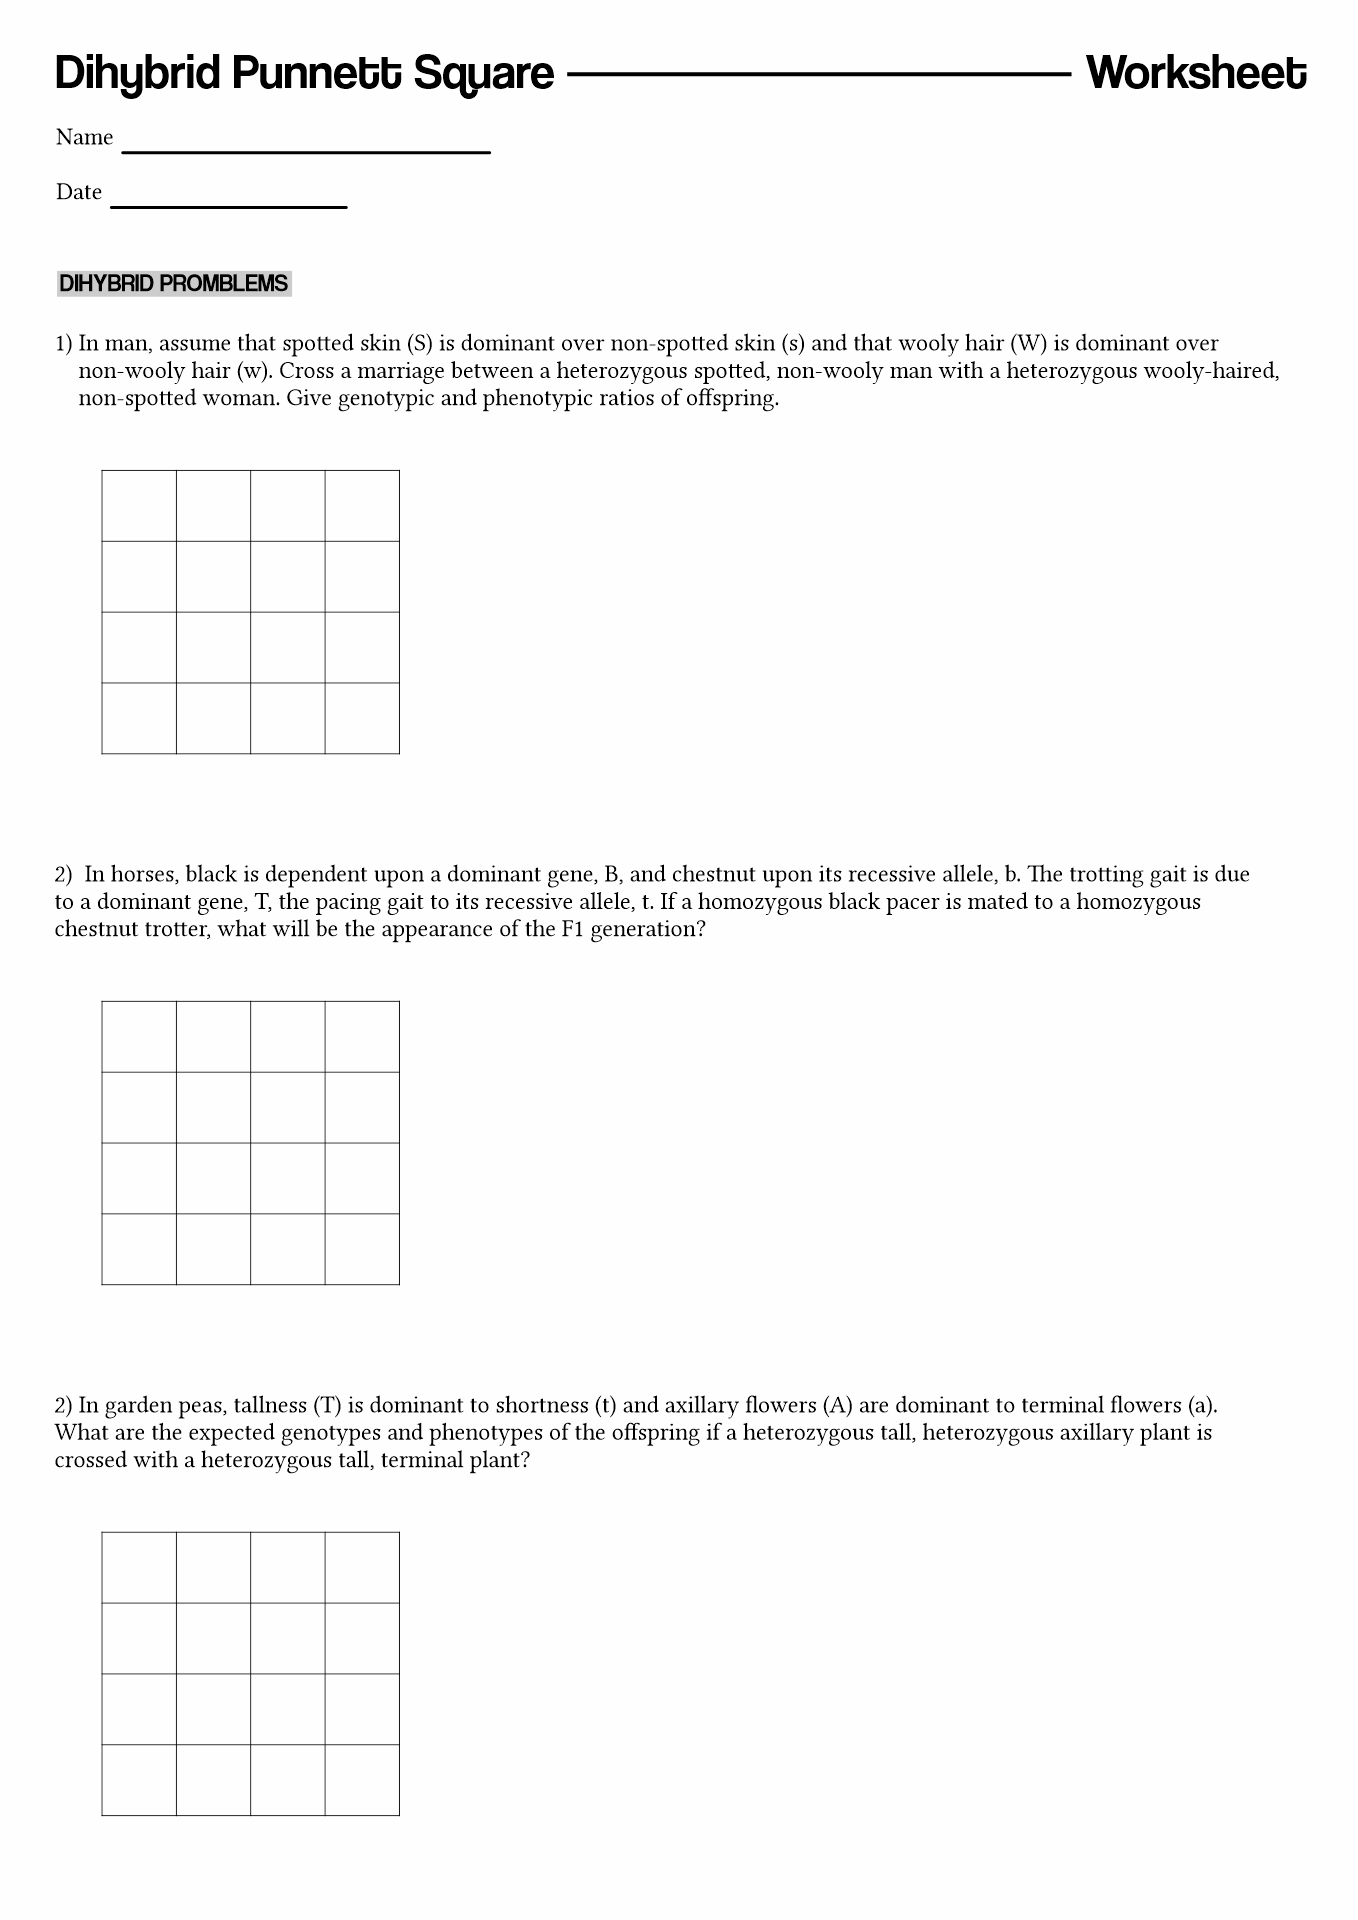 Punnett Square Practice Worksheet Answers